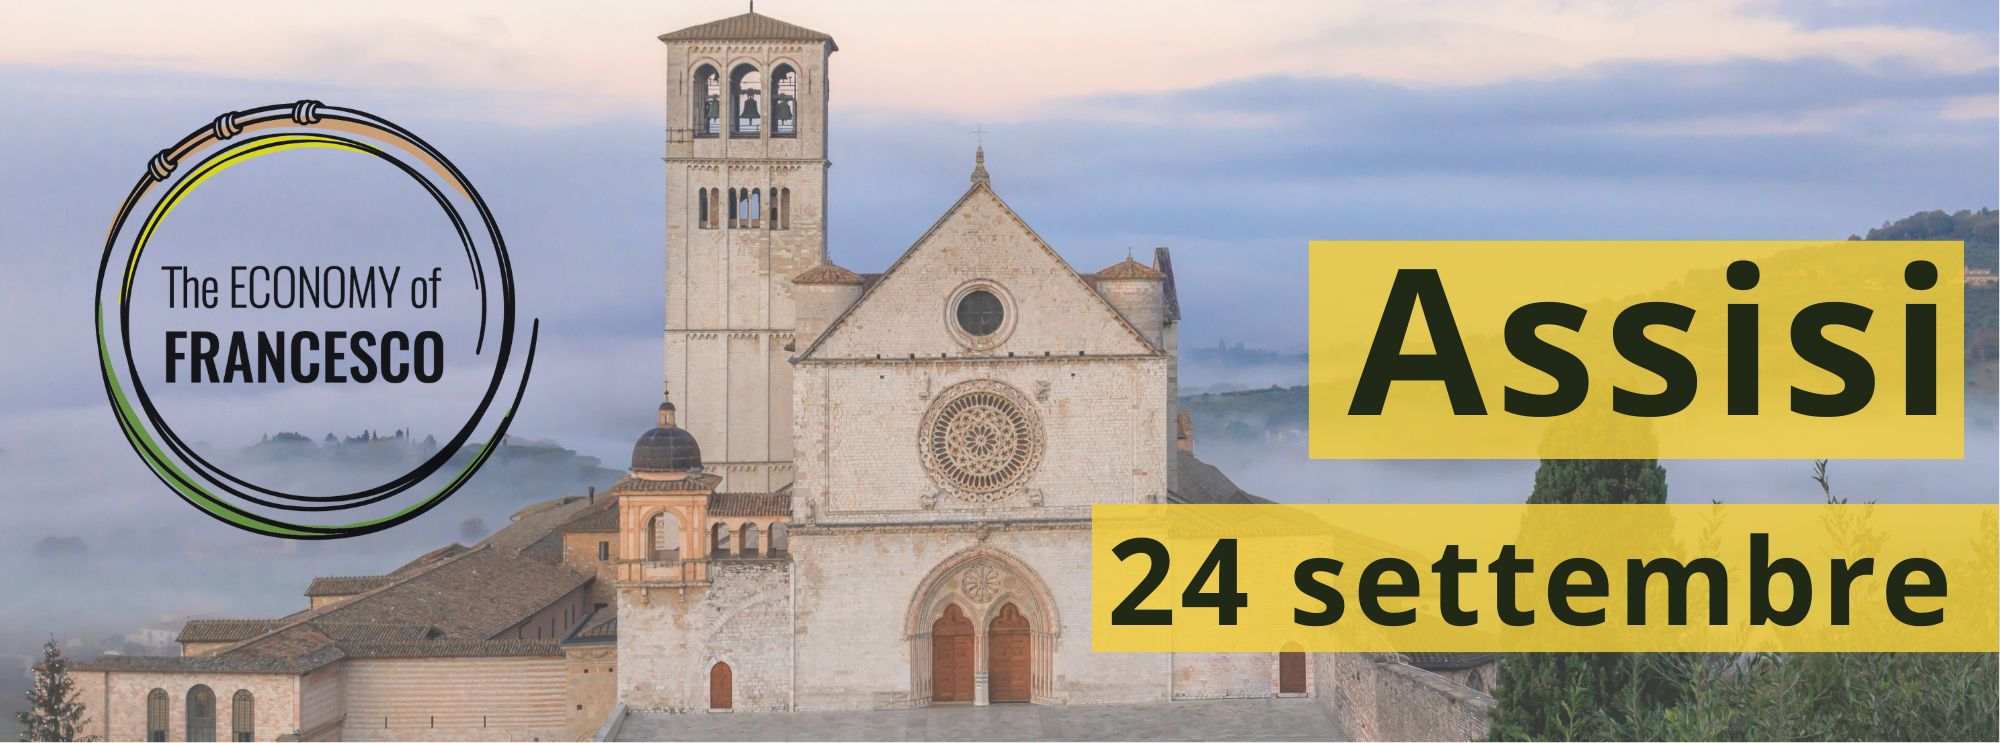 Visita del Santo Padre ad Assisi in occasione dell’evento “Economy of Francesco” [24 settembre 2022]